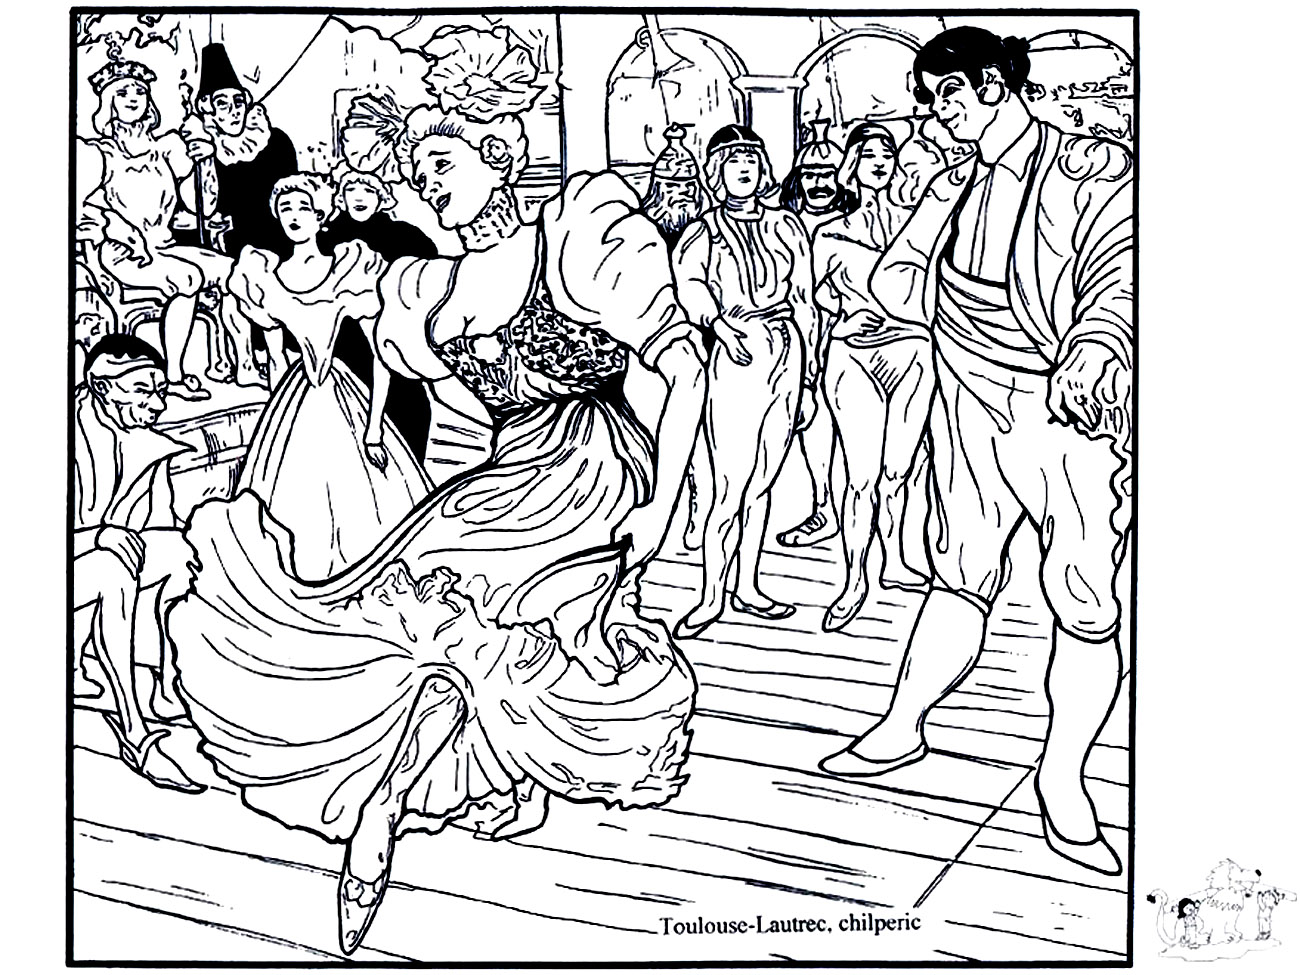 Henri de Toulouse-Lautrec - Marcelle Lender che balla il bolero in 'Chilpéric' (1895-1896). Bellissima colorazione ispirata al dipinto di Henri de Toulouse-Lautrec 'Marcelle Lender che balla il bolero in 'Chilpéric'' (1895-1896).
